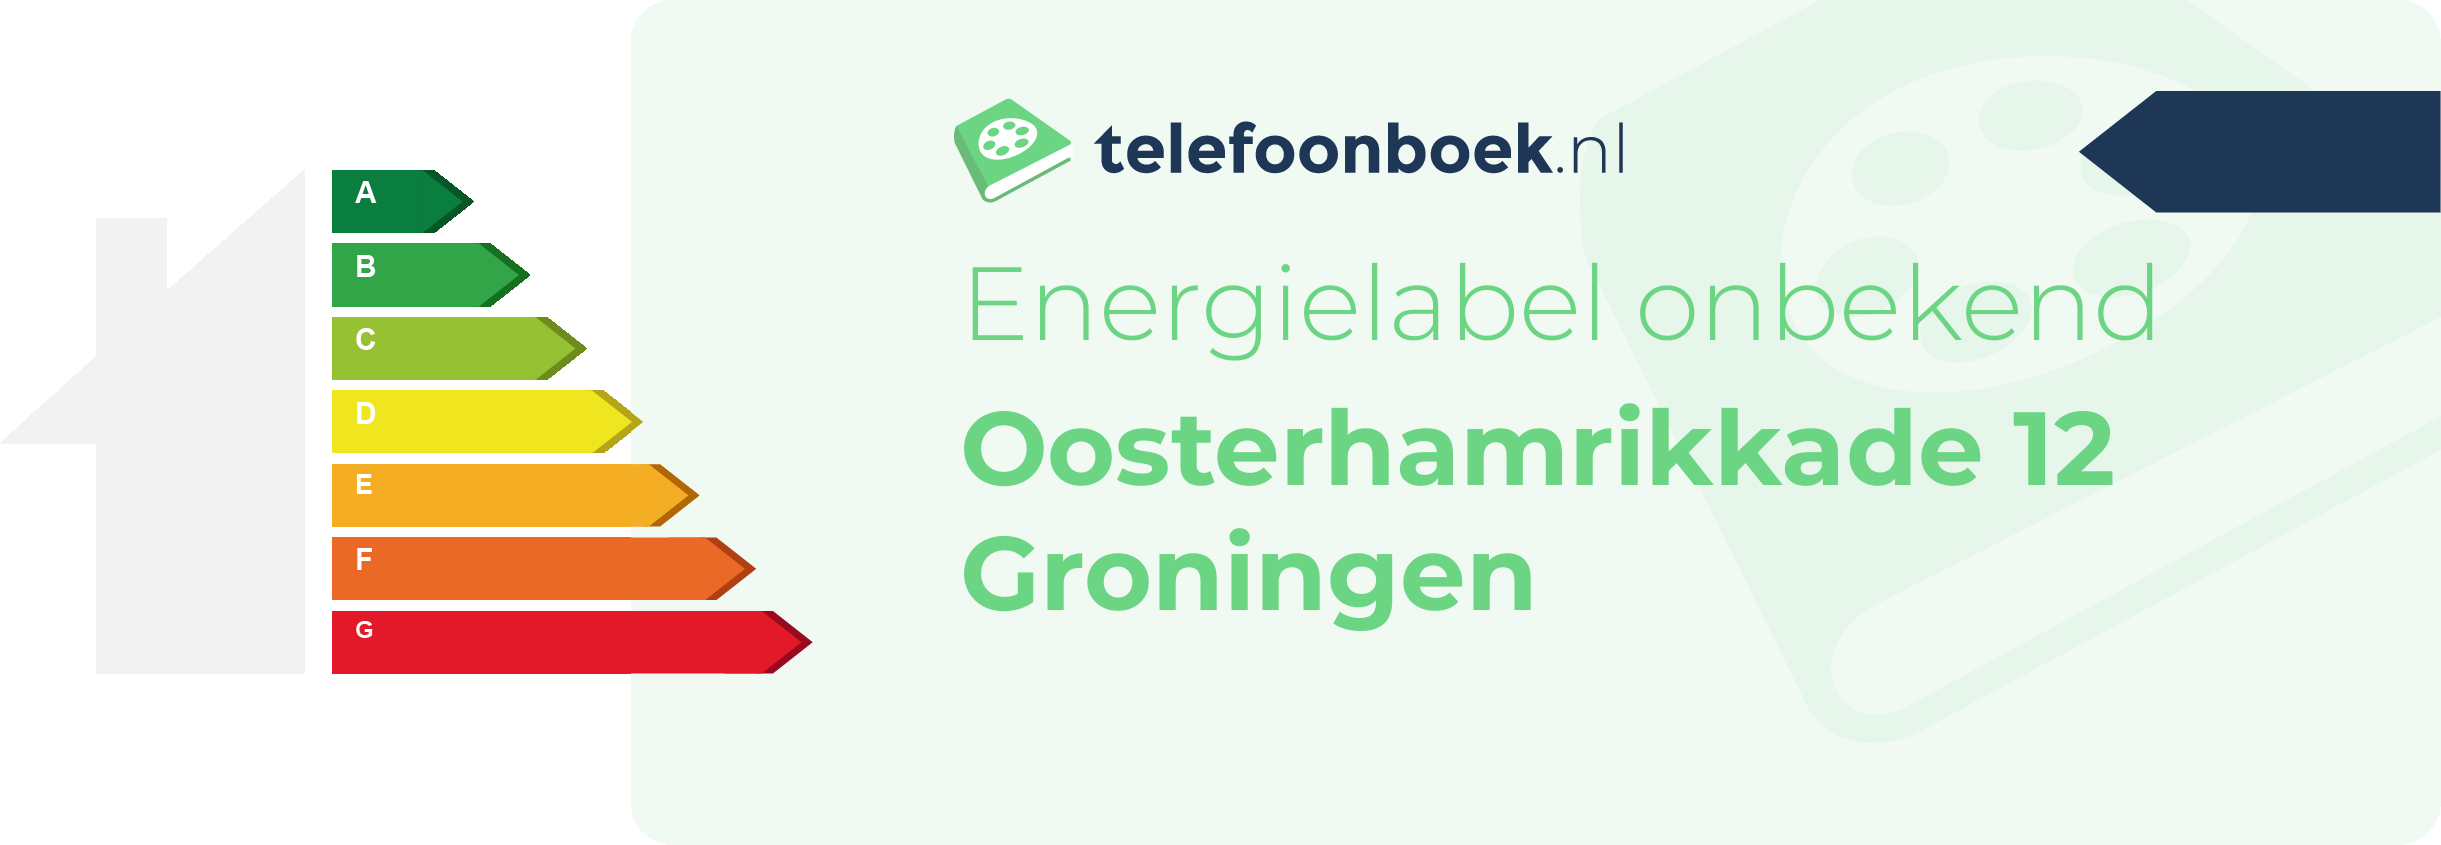 Energielabel Oosterhamrikkade 12 Groningen